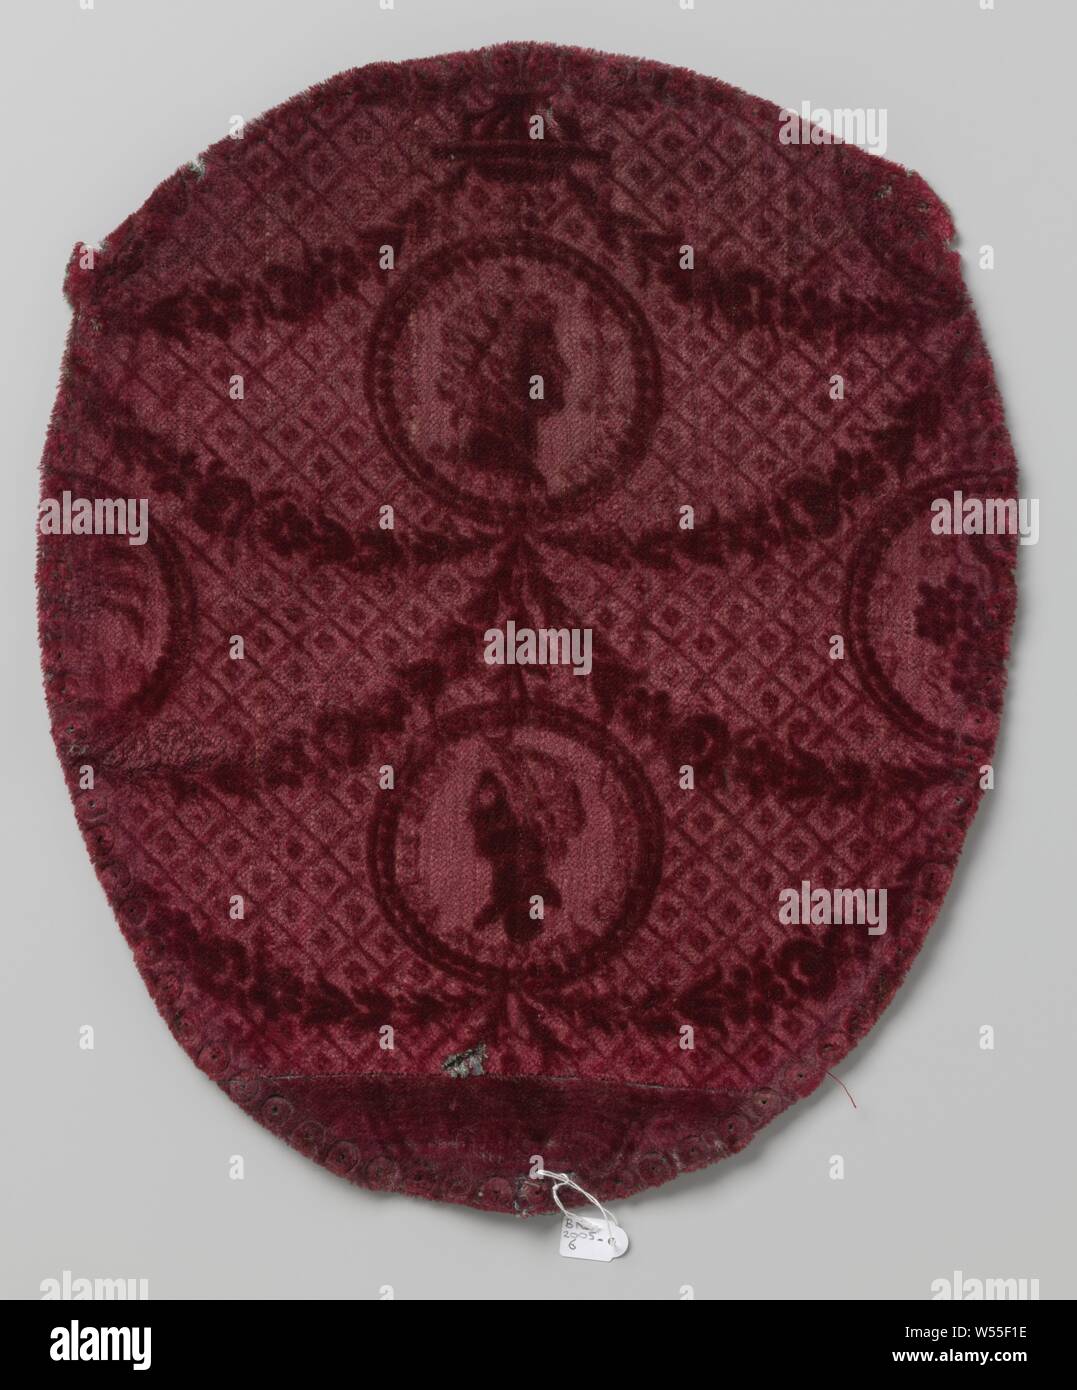 Housses de chaise ovale faite de velours rouge et rasée de guirlandes et médaillons rempli de meubles anciens chefs de l'empereur dans l'arrière-plan d'un motif de grille, sellerie ovale d'un dossier de chaise de velours rouge et rasée. Motif : médaillons, reliés par des guirlandes, remplie de meubles anciens de la tête de l'empereur avec l'inscription : ..... SOL ... ROM ... (Centre haut) et à l'ancienne tête de la femme avec l'inscription : AUGUSTA ...... (En bas au centre). Sol avec motif de grille., des cartes à jouer, attendant à table, anonyme, Pays-Bas (peut-être), ch. 1780 - c. 1790, laine, soie, velours tissu (tissu), H 44 cm × w 37,5 cm Banque D'Images